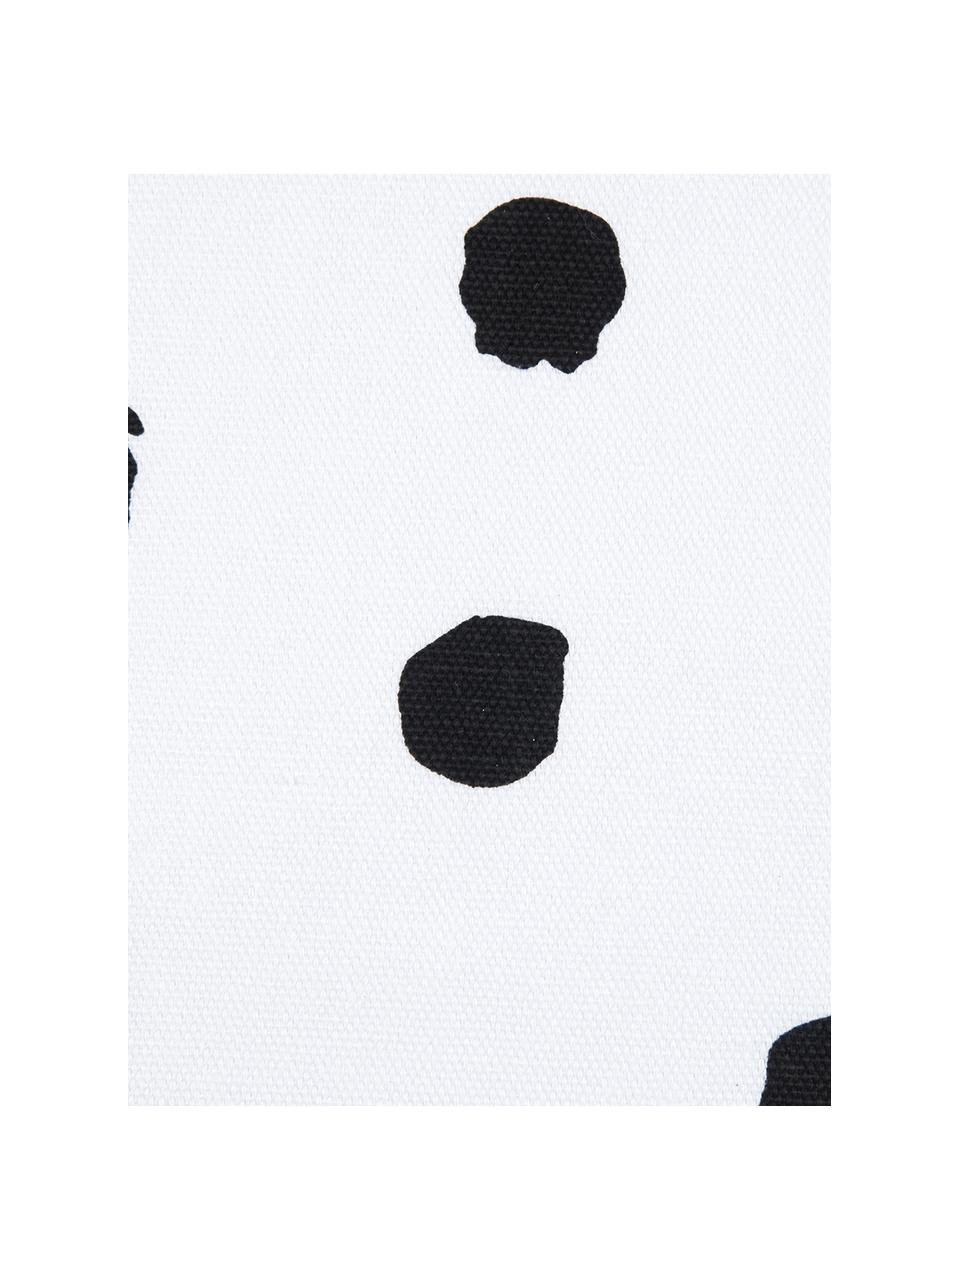 Gepunktete Kissenhülle Riley in Schwarz/Weiß, 100% Baumwolle, Schwarz, Weiß, B 40 x L 40 cm